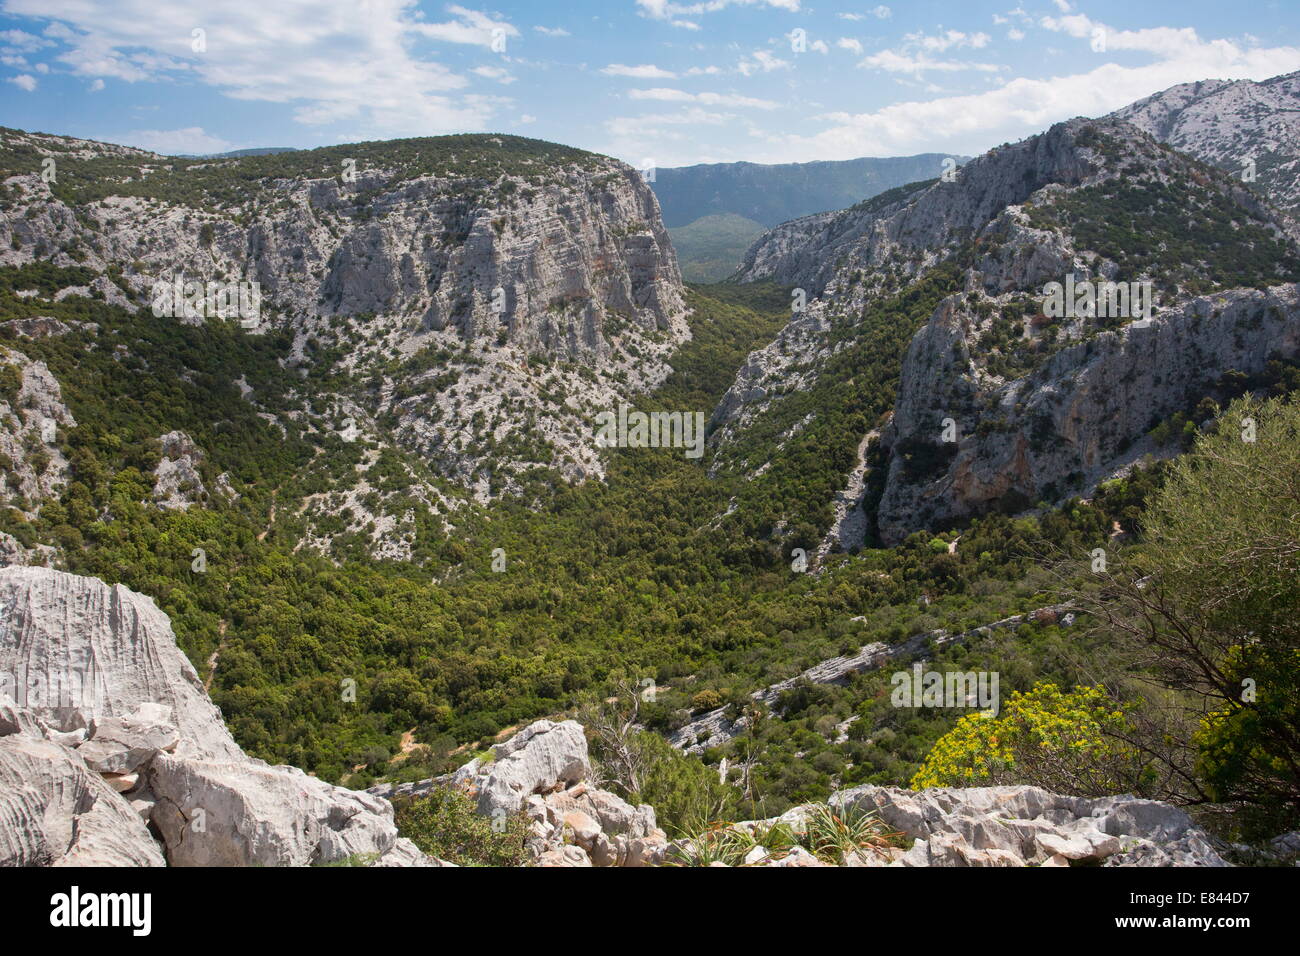 The limestone Supramonte Mountains, Gennargentu, Sardinia, Italy. Stock Photo